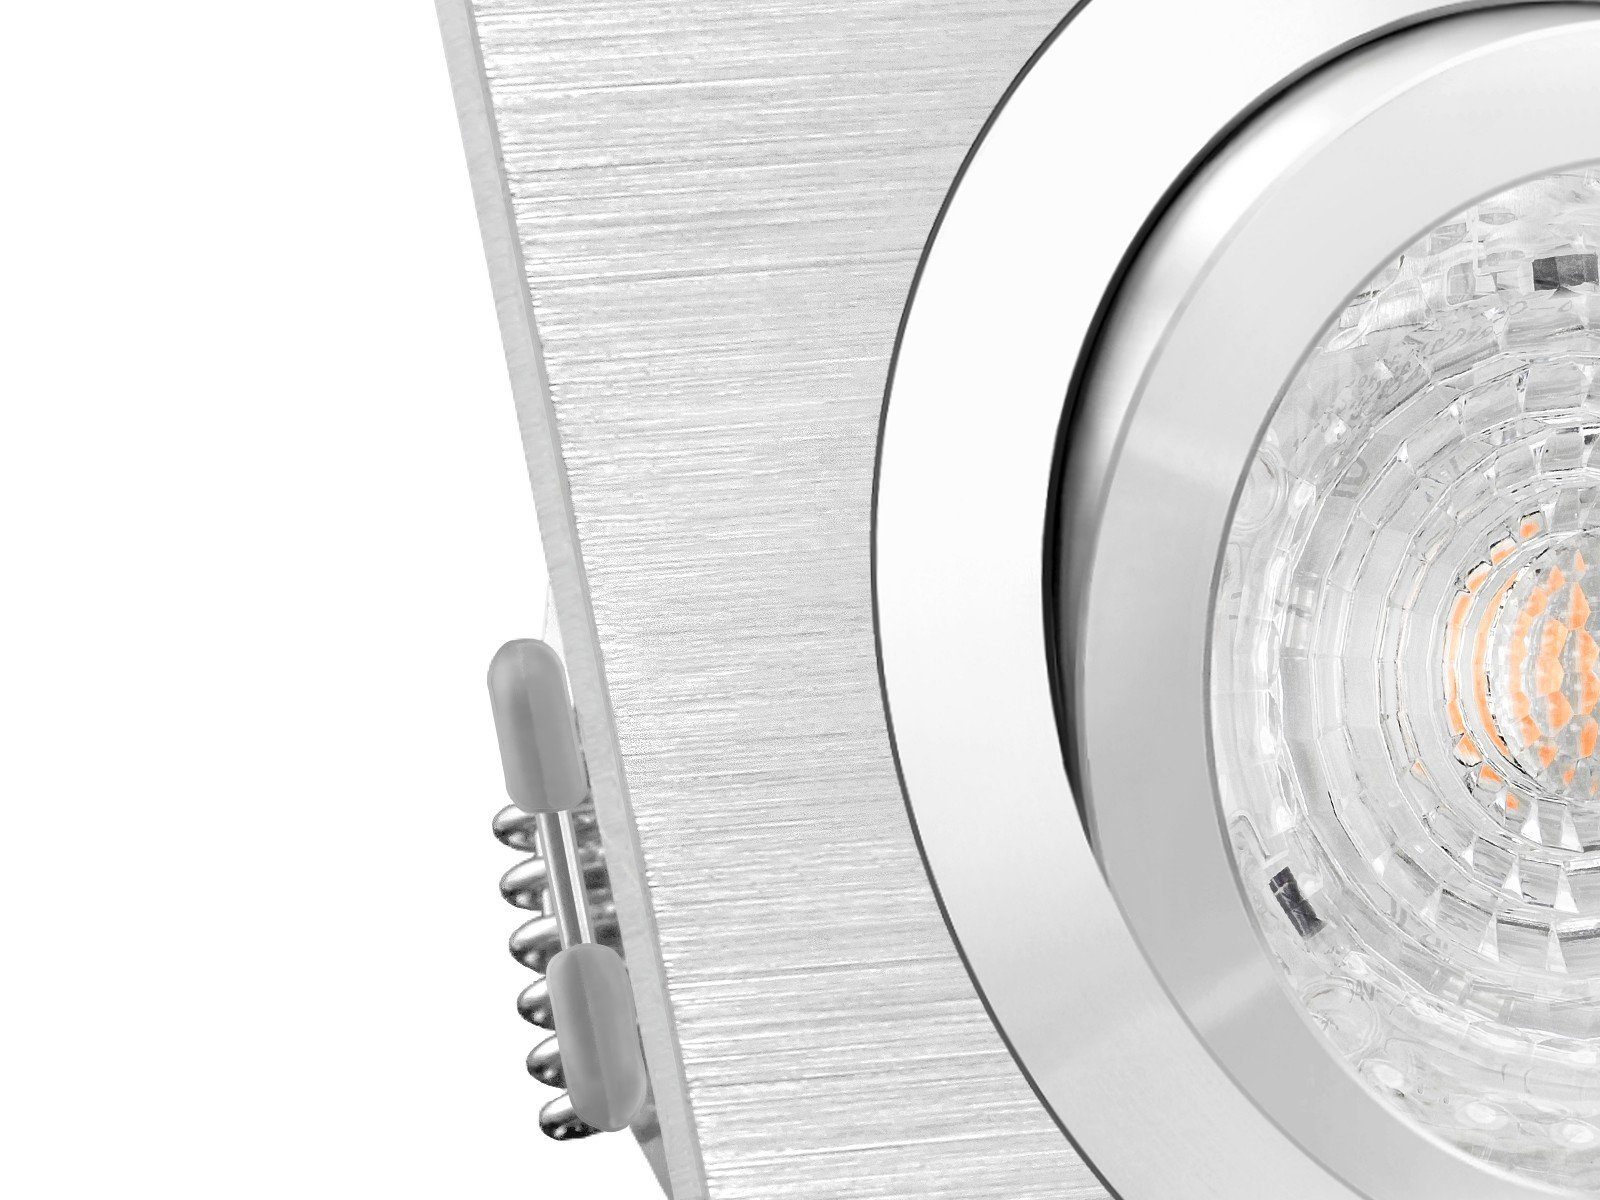 warm weiss LED SSC-LUXon DIMMBAR, Einbaustrahler Alu 4,9W LED-Einbaustrahler QF-2 schwenkbar, Warmweiß LED